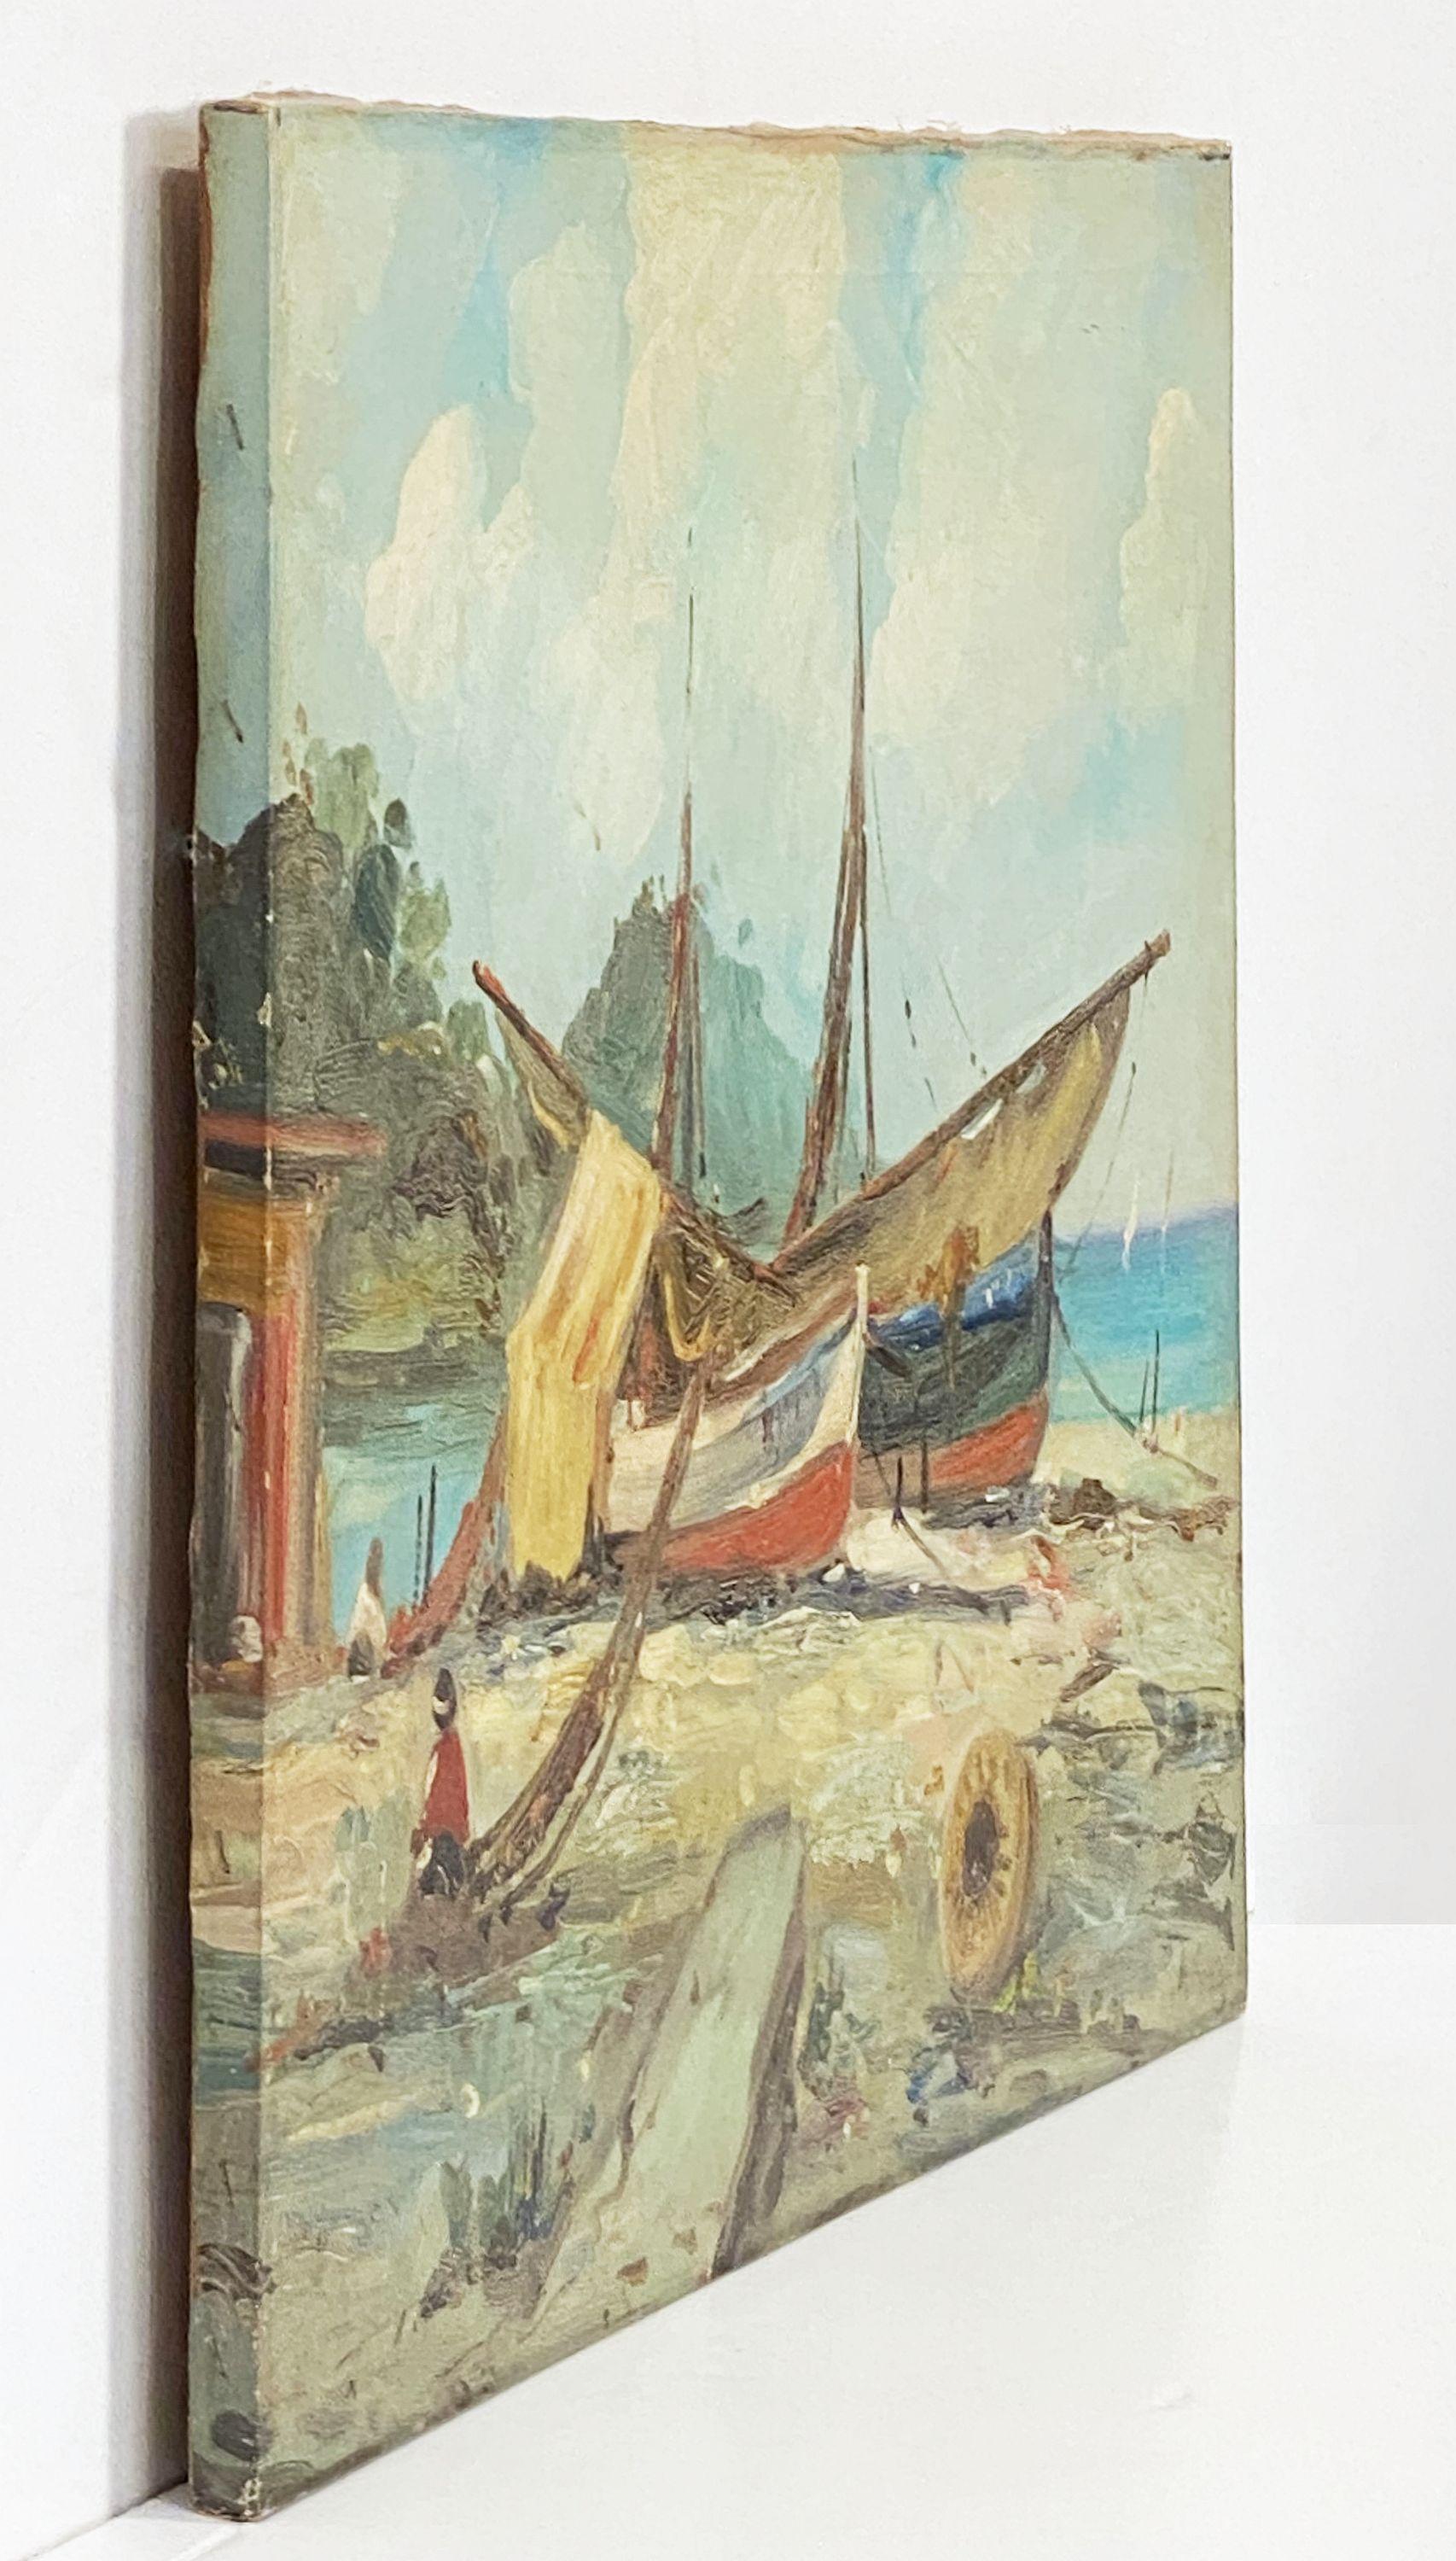 Français Peinture à l'huile sur toile de bateaux en bord de mer